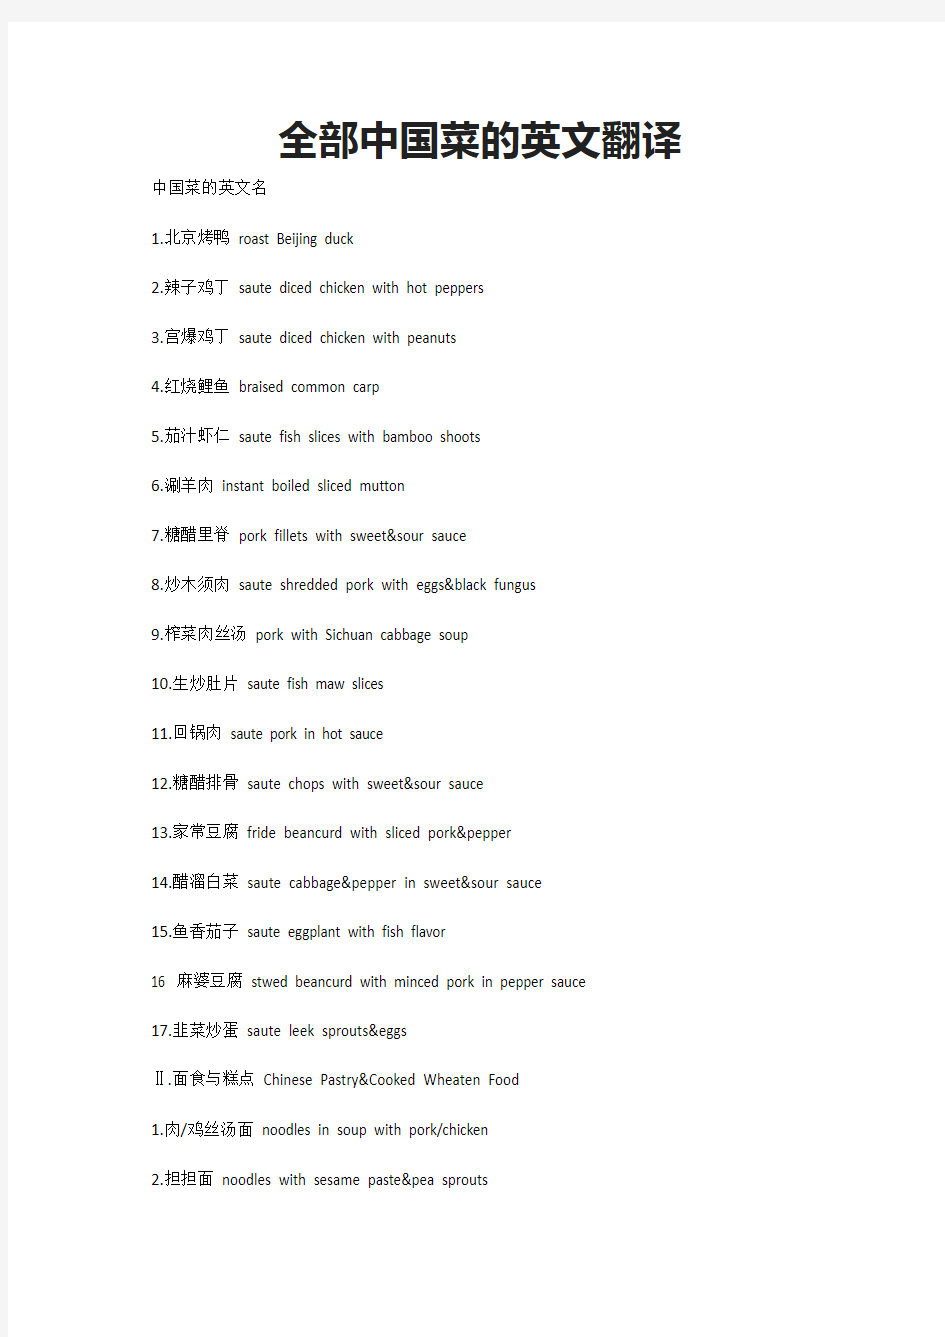 全部中国菜的英文翻译